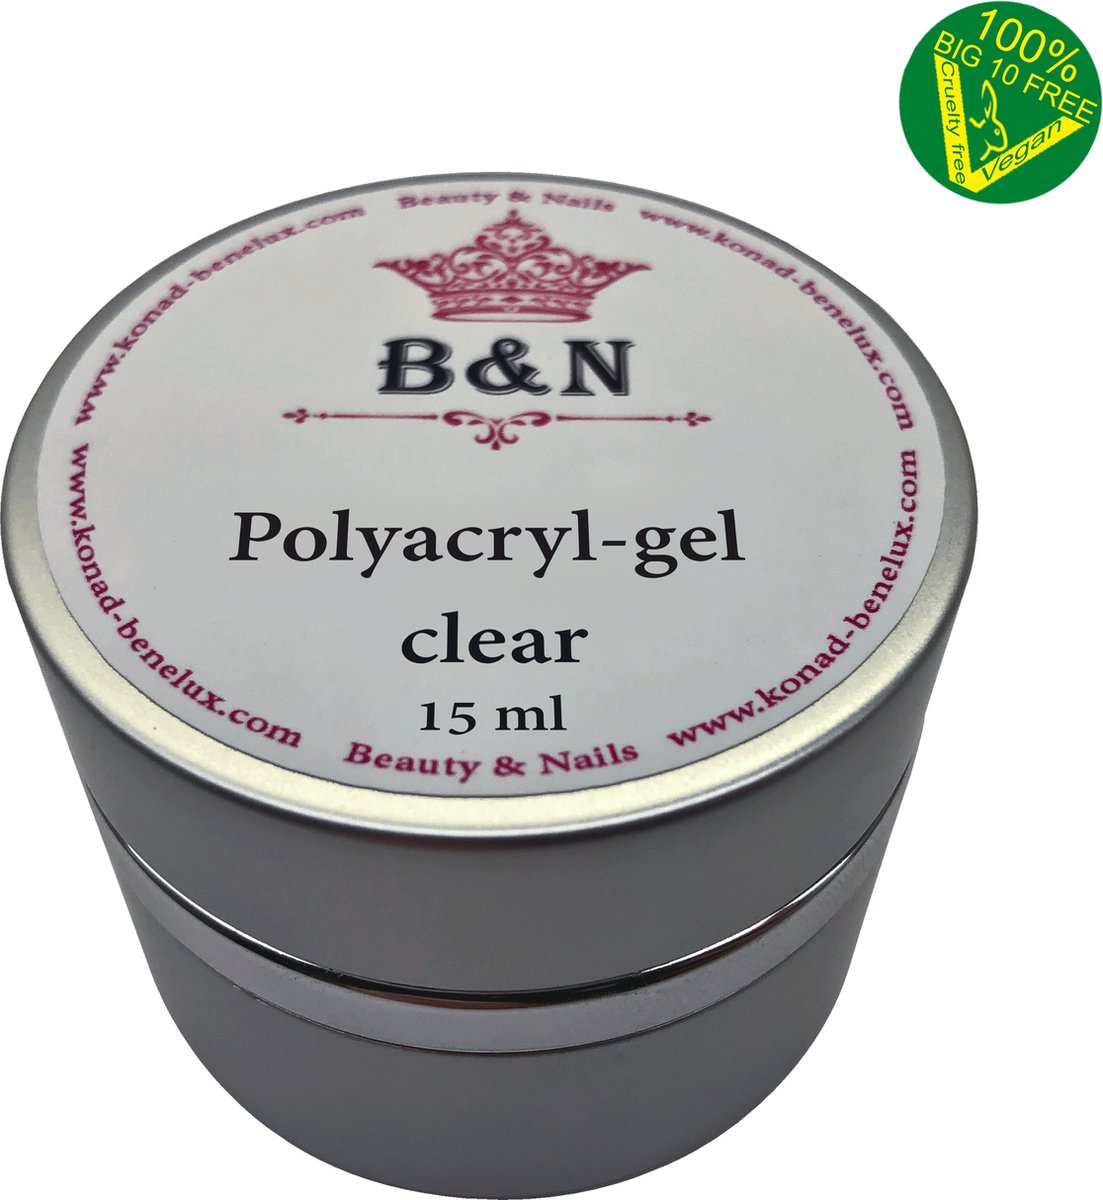 Polyacryl clear - 15 ml | B&N - VEGAN - polygel